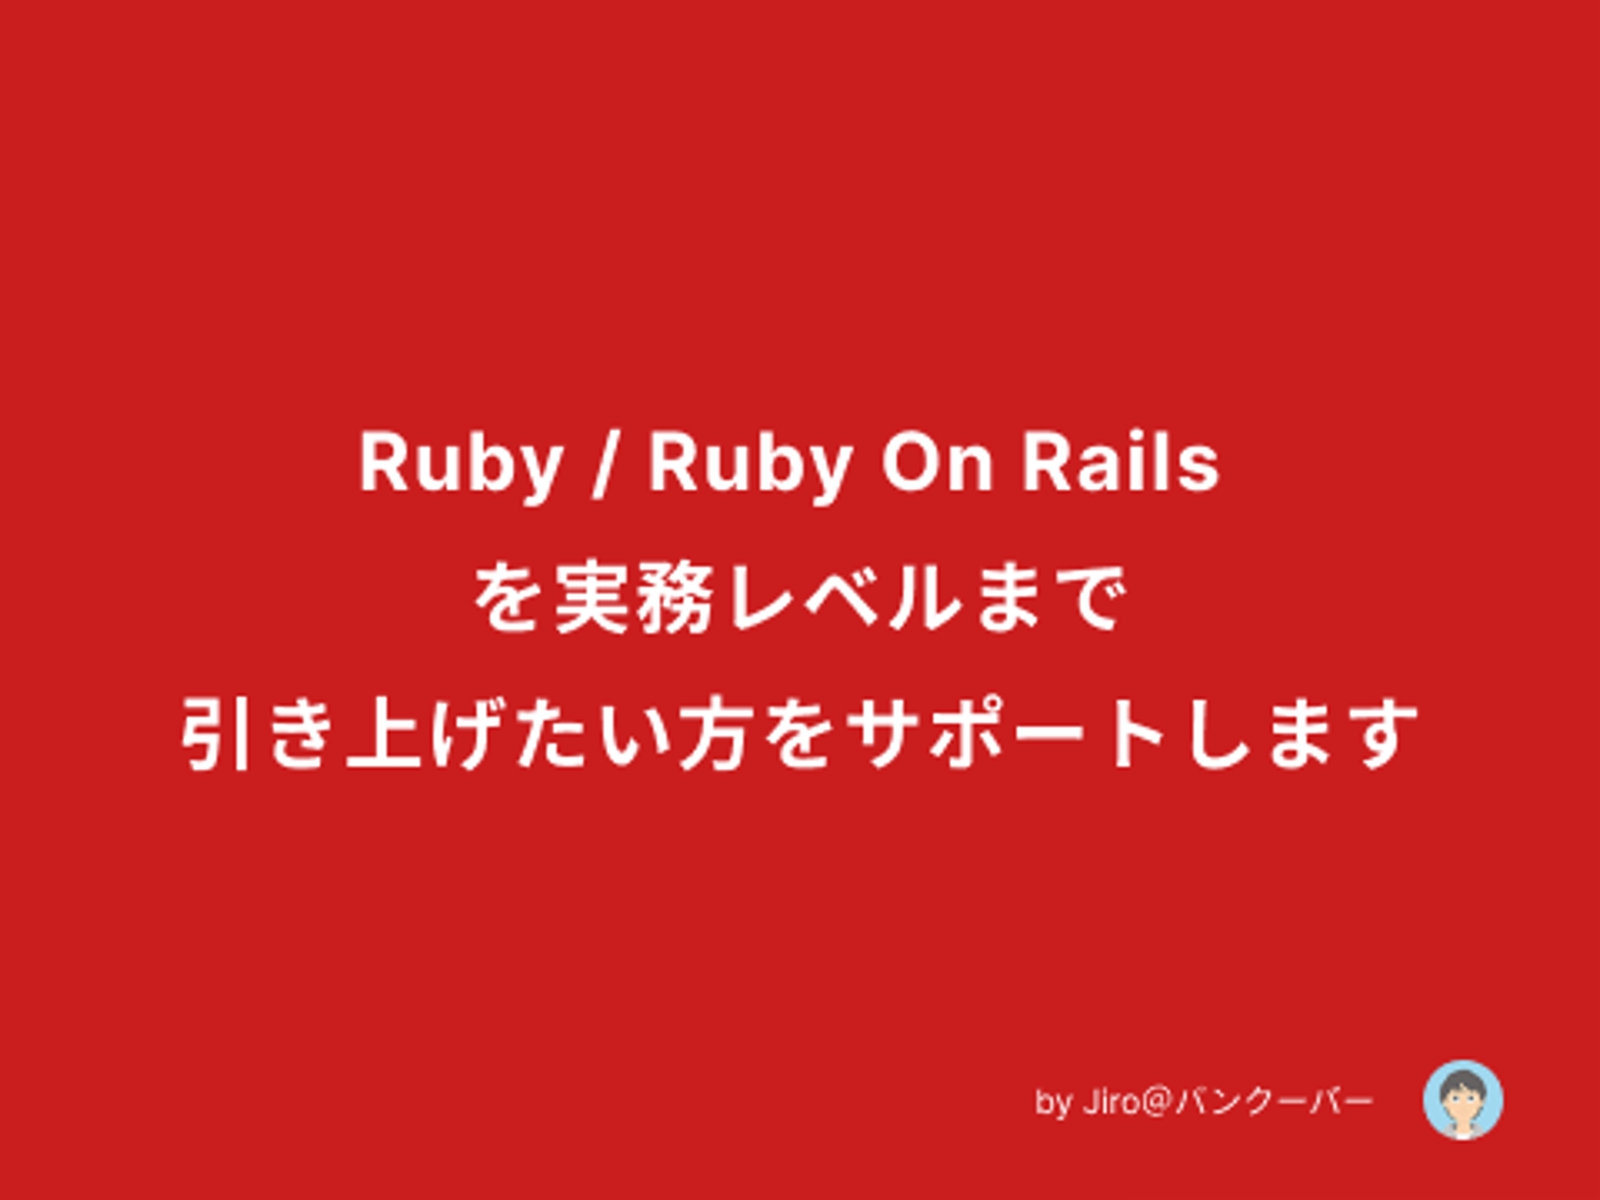 Ruby/ Ruby on Rails を実務レベルまで引き上げたい方をサポートします！-image1